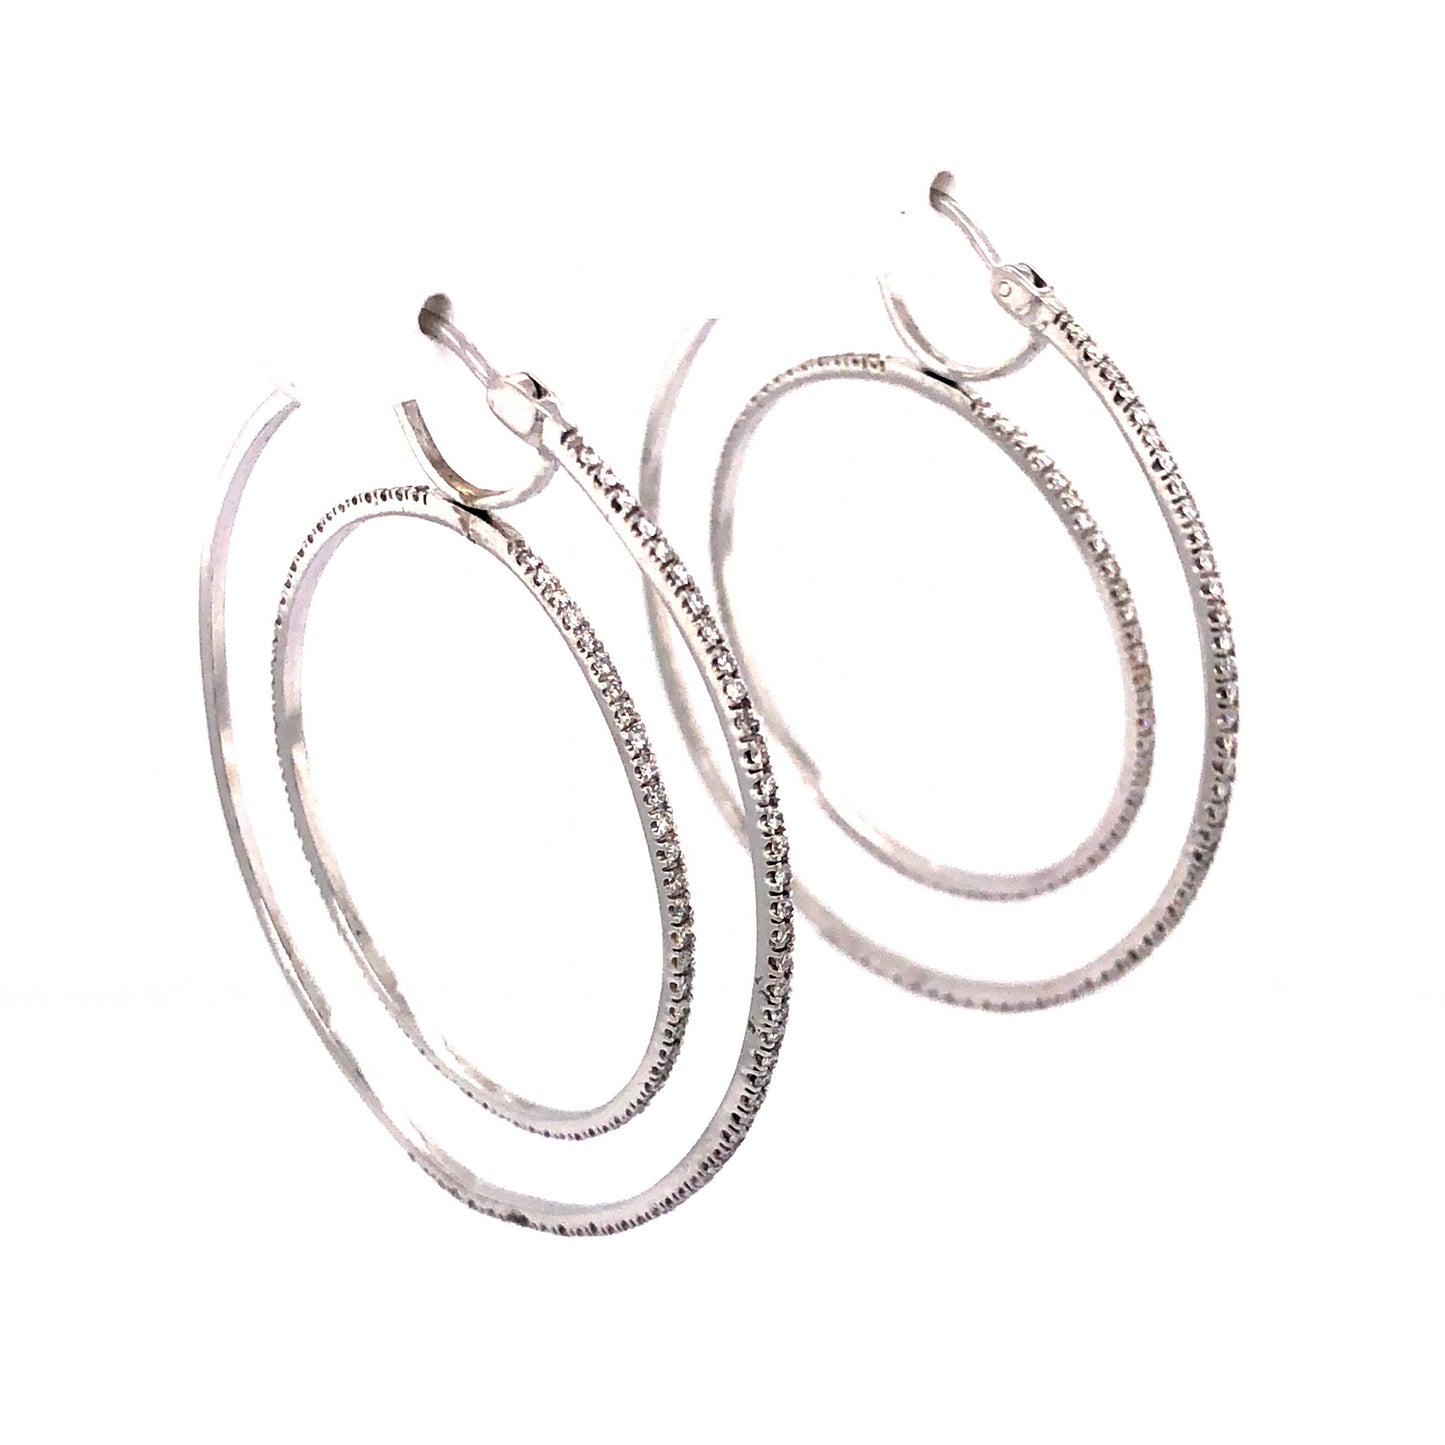 1.37 Spinning Diamond Hoop Earrings in 18k White Gold